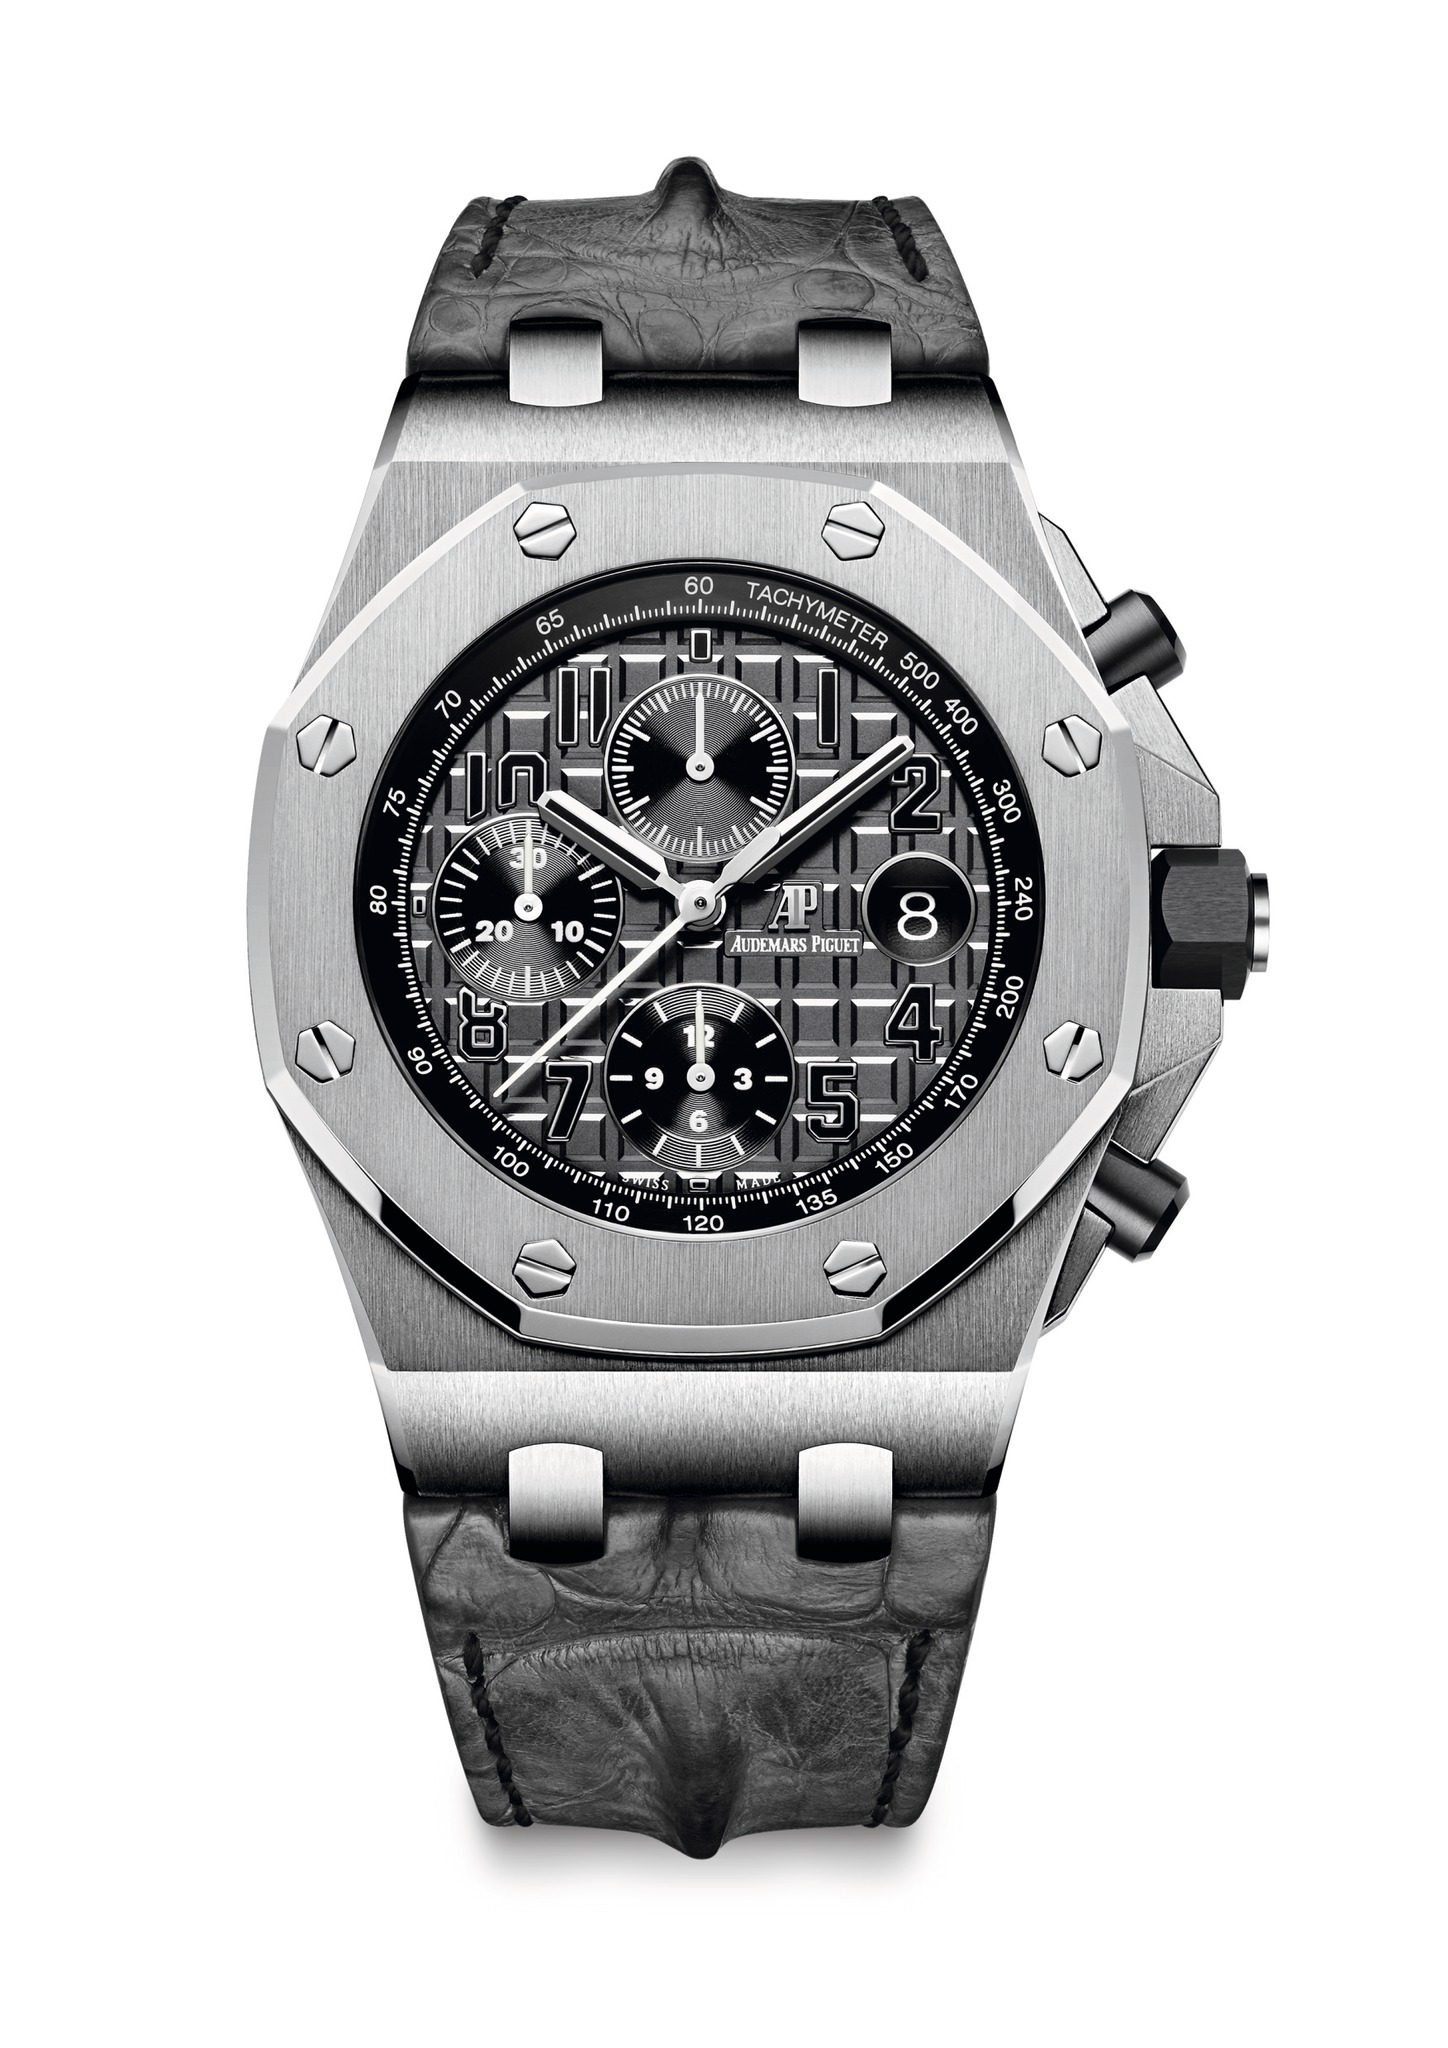 Audemars Piguet New Royal Oak Offshore Chronograph Steel watch REF: 26470ST.OO.A104CR.01